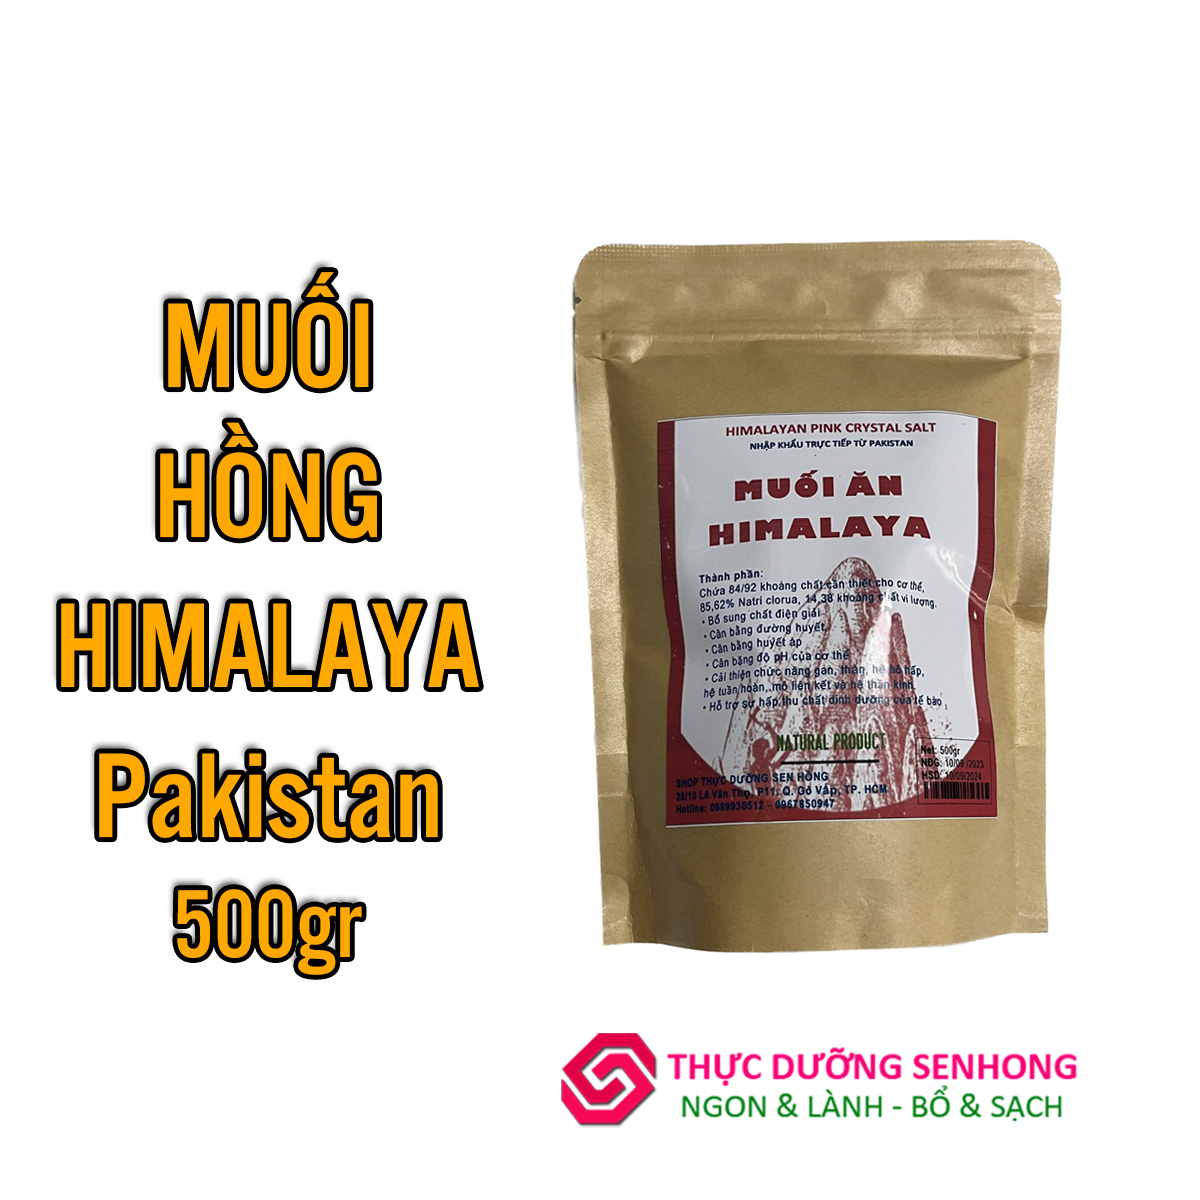 Muối hồng Himalaya (500gr) Muối Organic nhập khẩu Pakistan